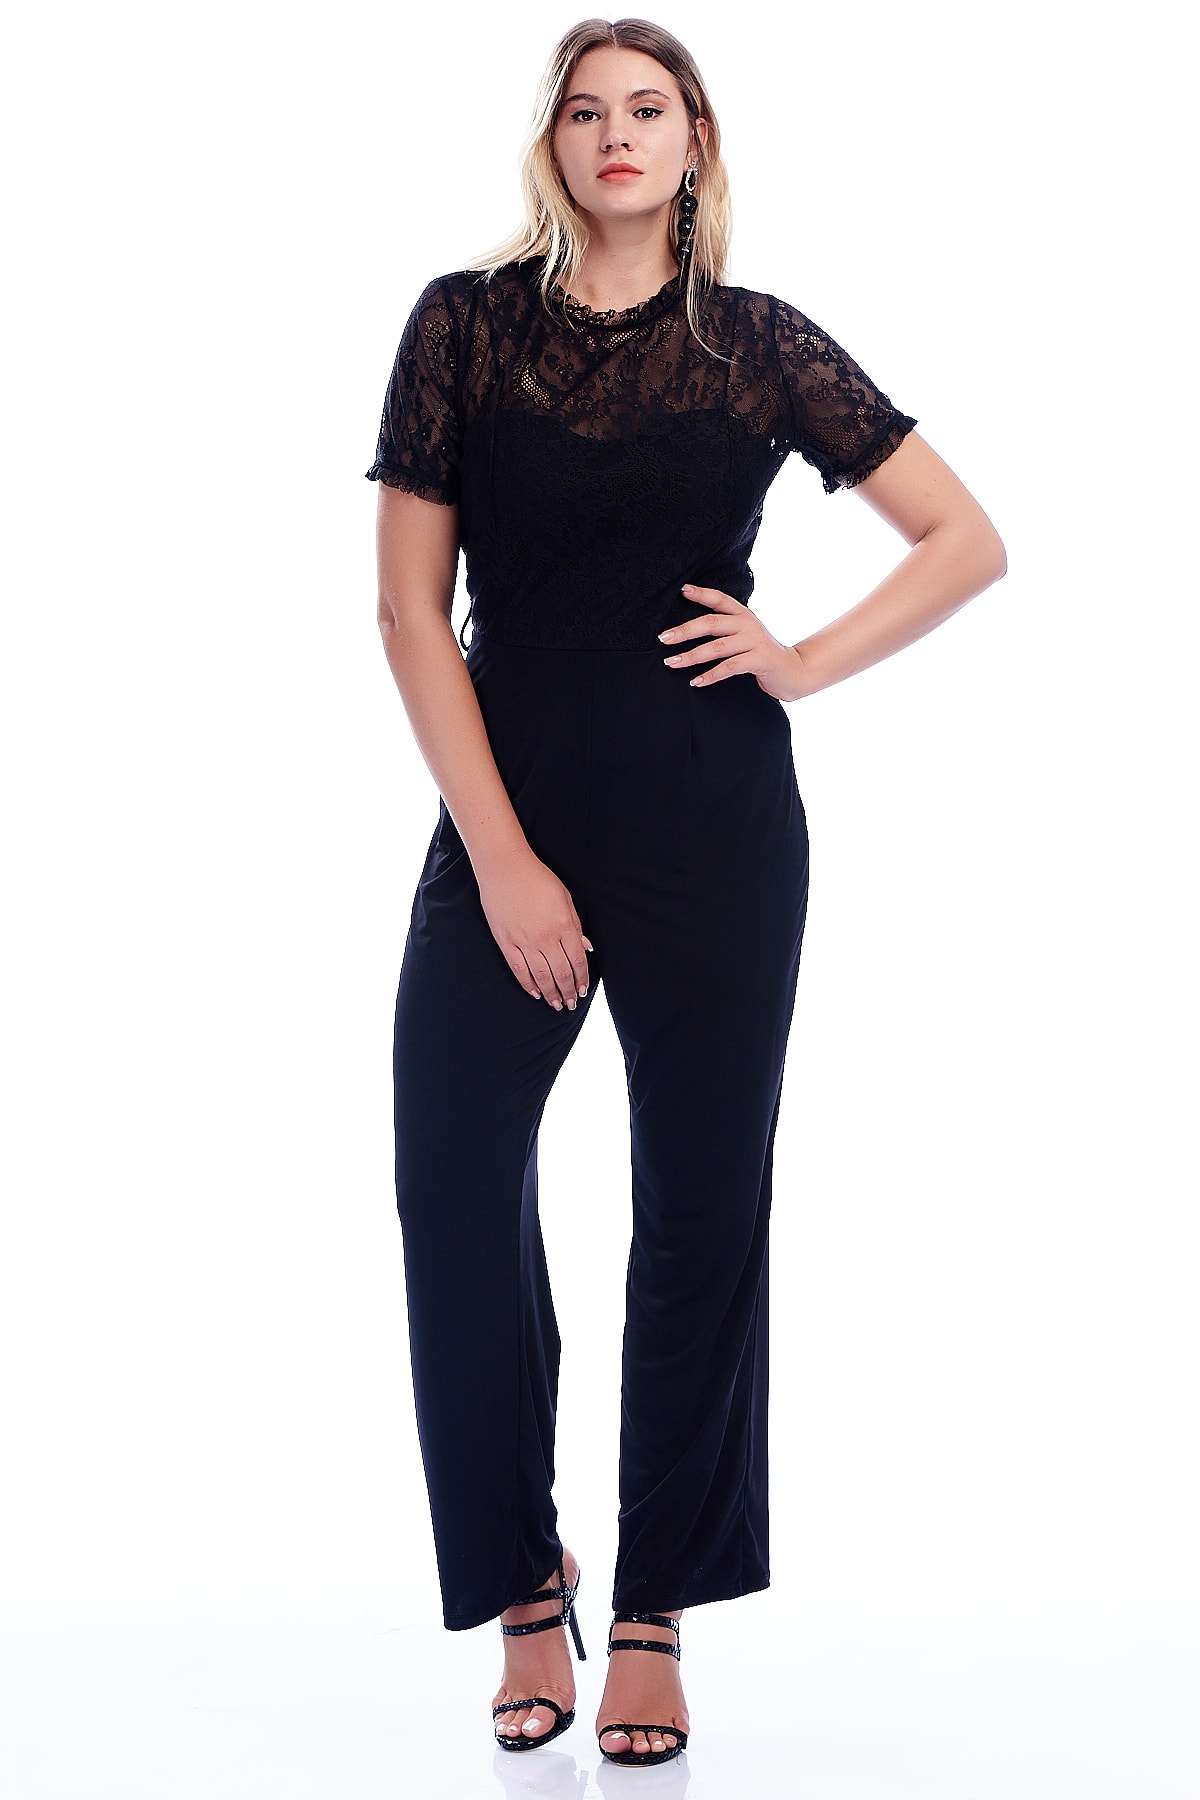 Levně Şans Women's Plus Size Black Jumpsuit with Lace Top